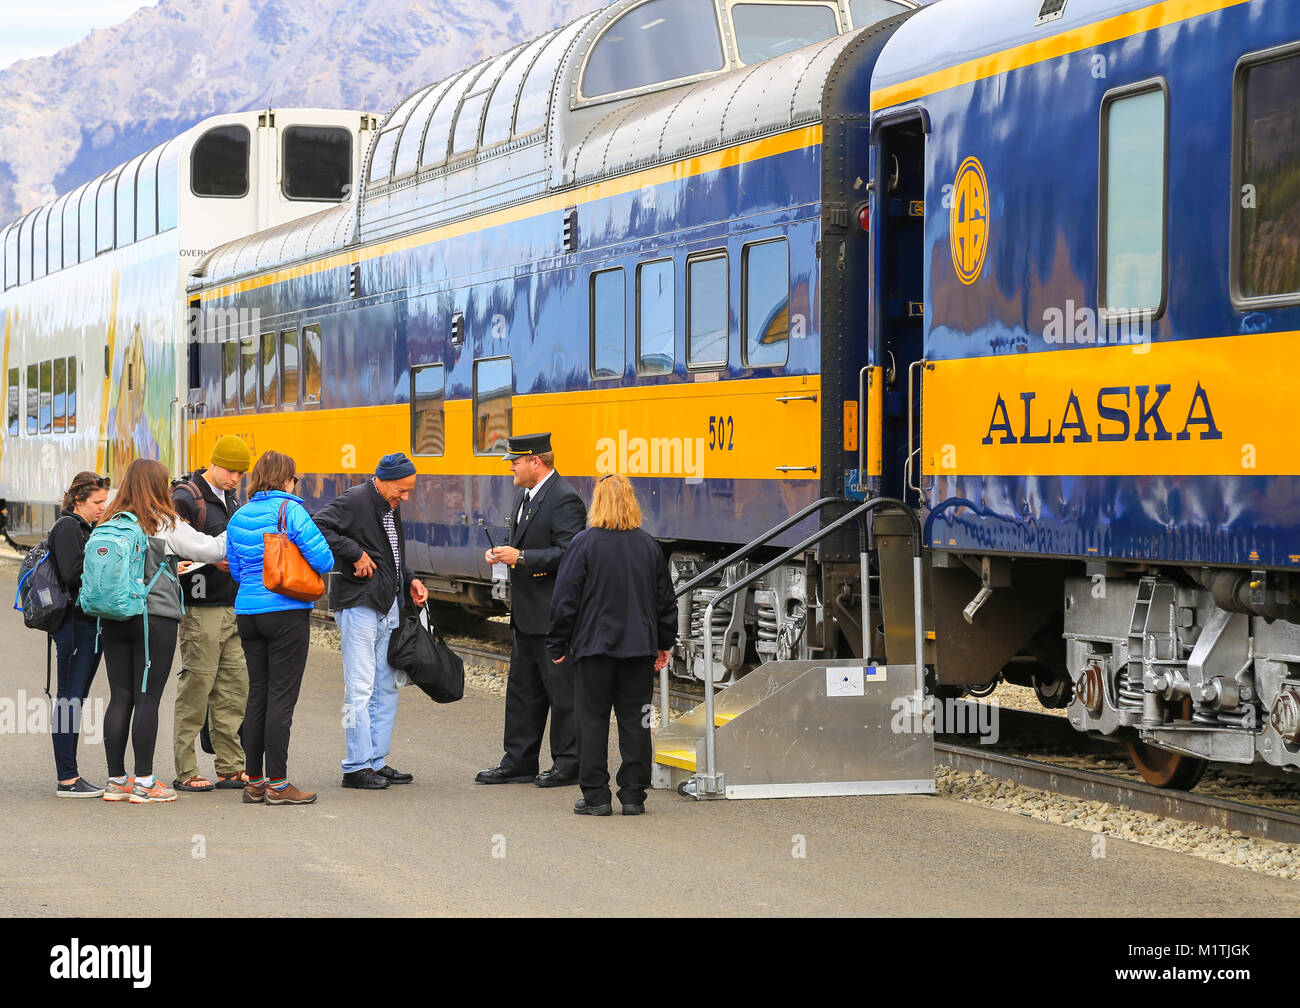 Le Parc National Denali, Alaska, USA - Mai 21, 2017 : l'Alaska Railroad Train en attente à la station de Denali. Obtenez dans l'passager wagon de chemin de fer. Banque D'Images